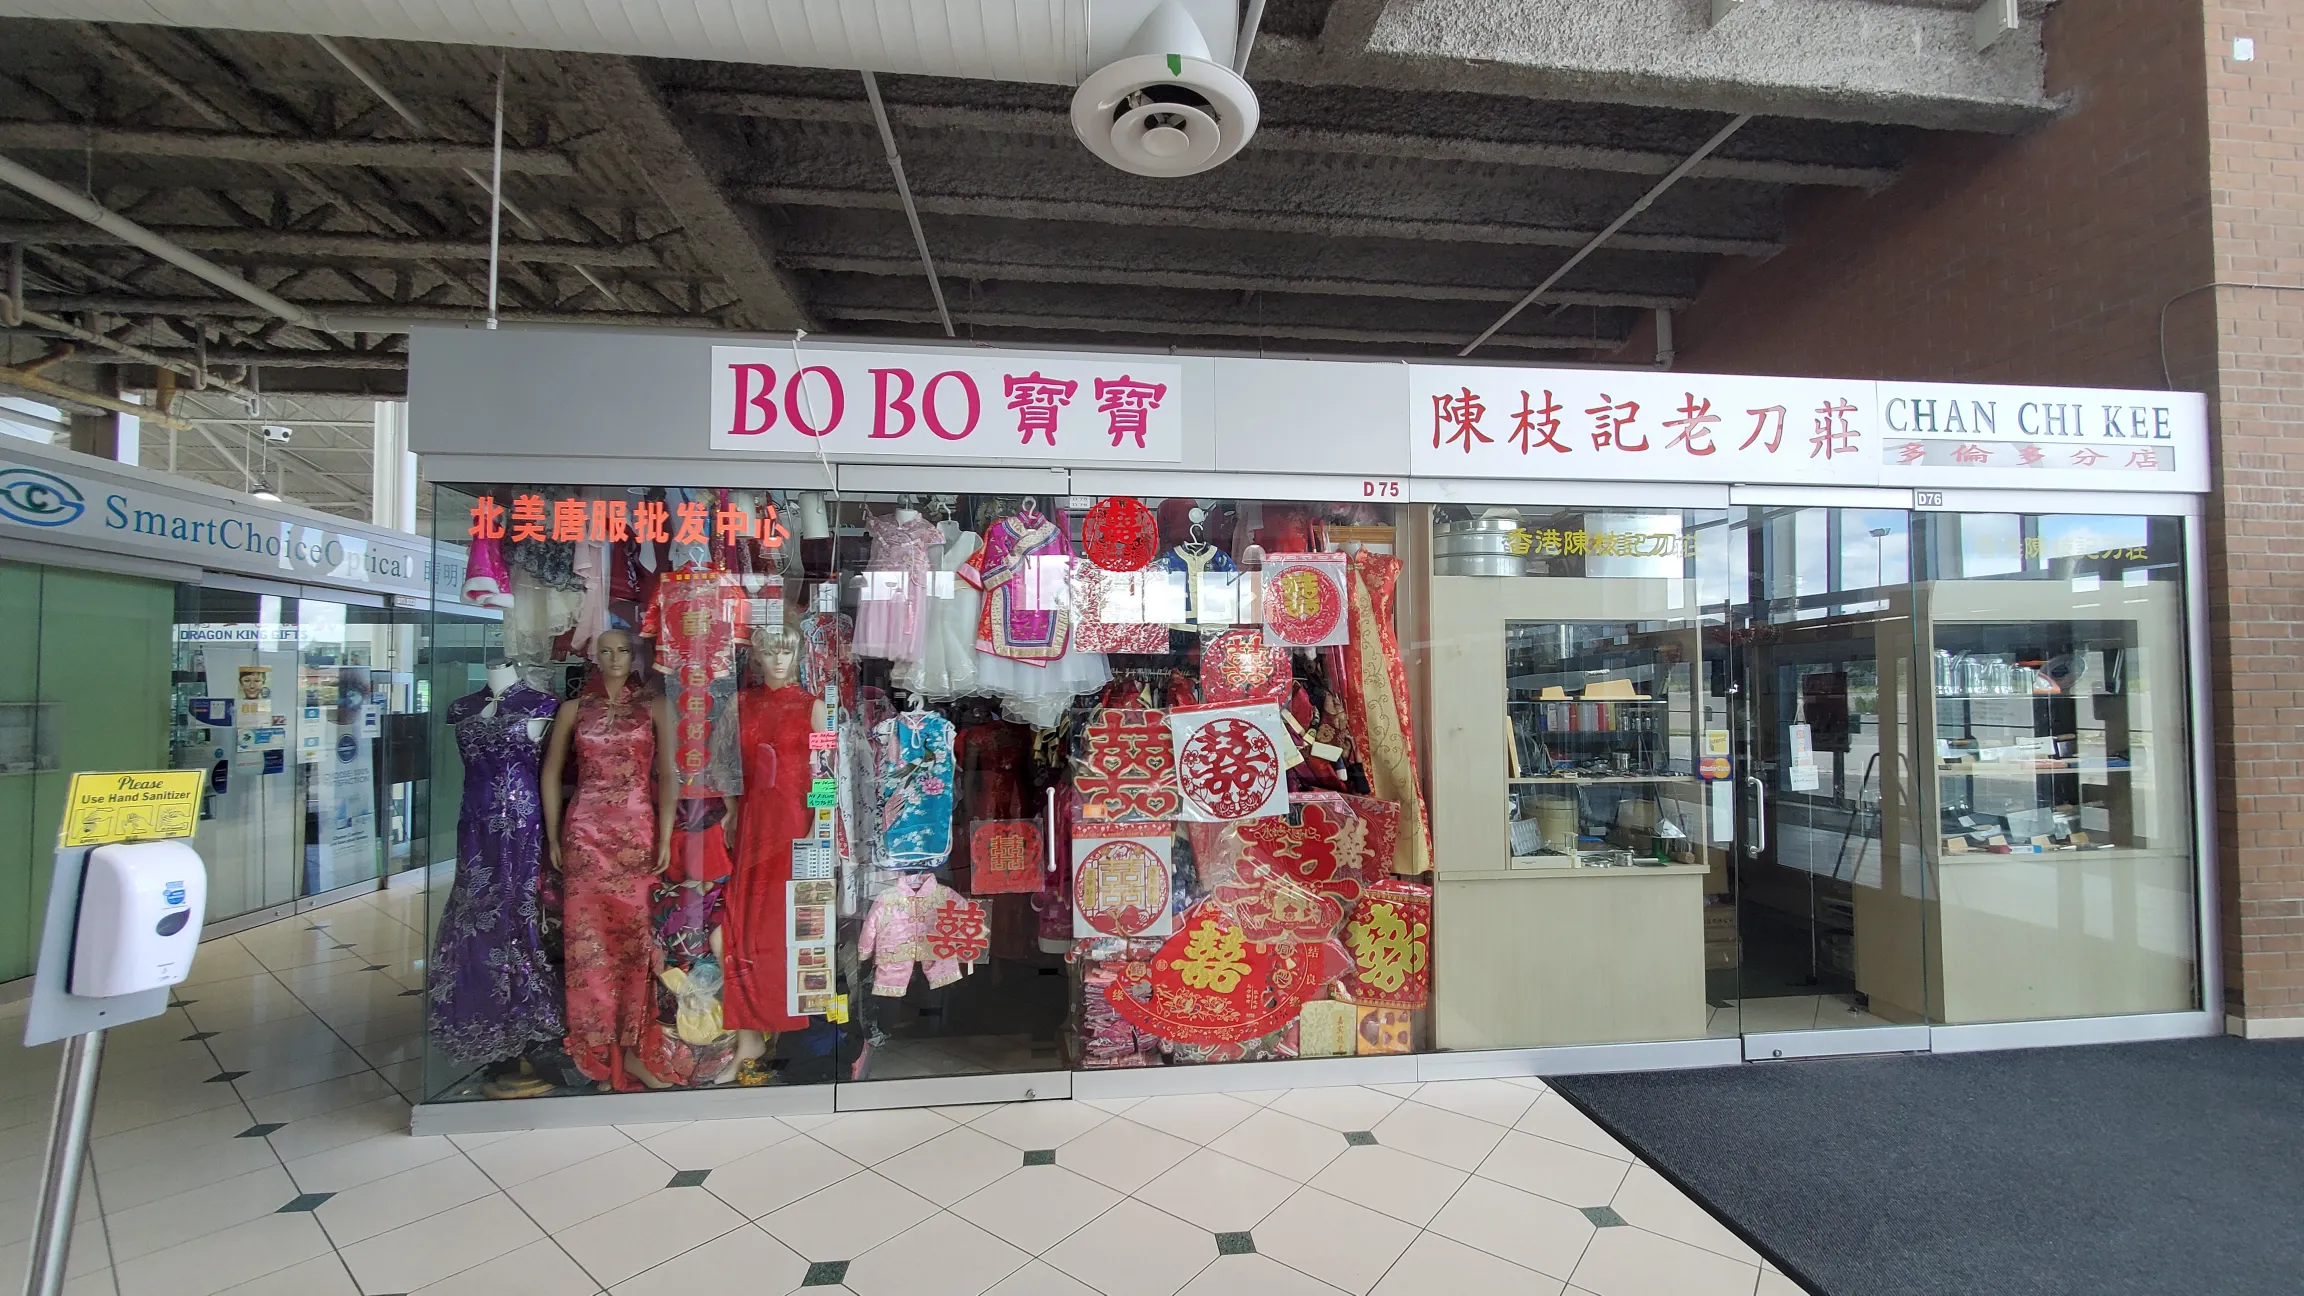 Bo Bo